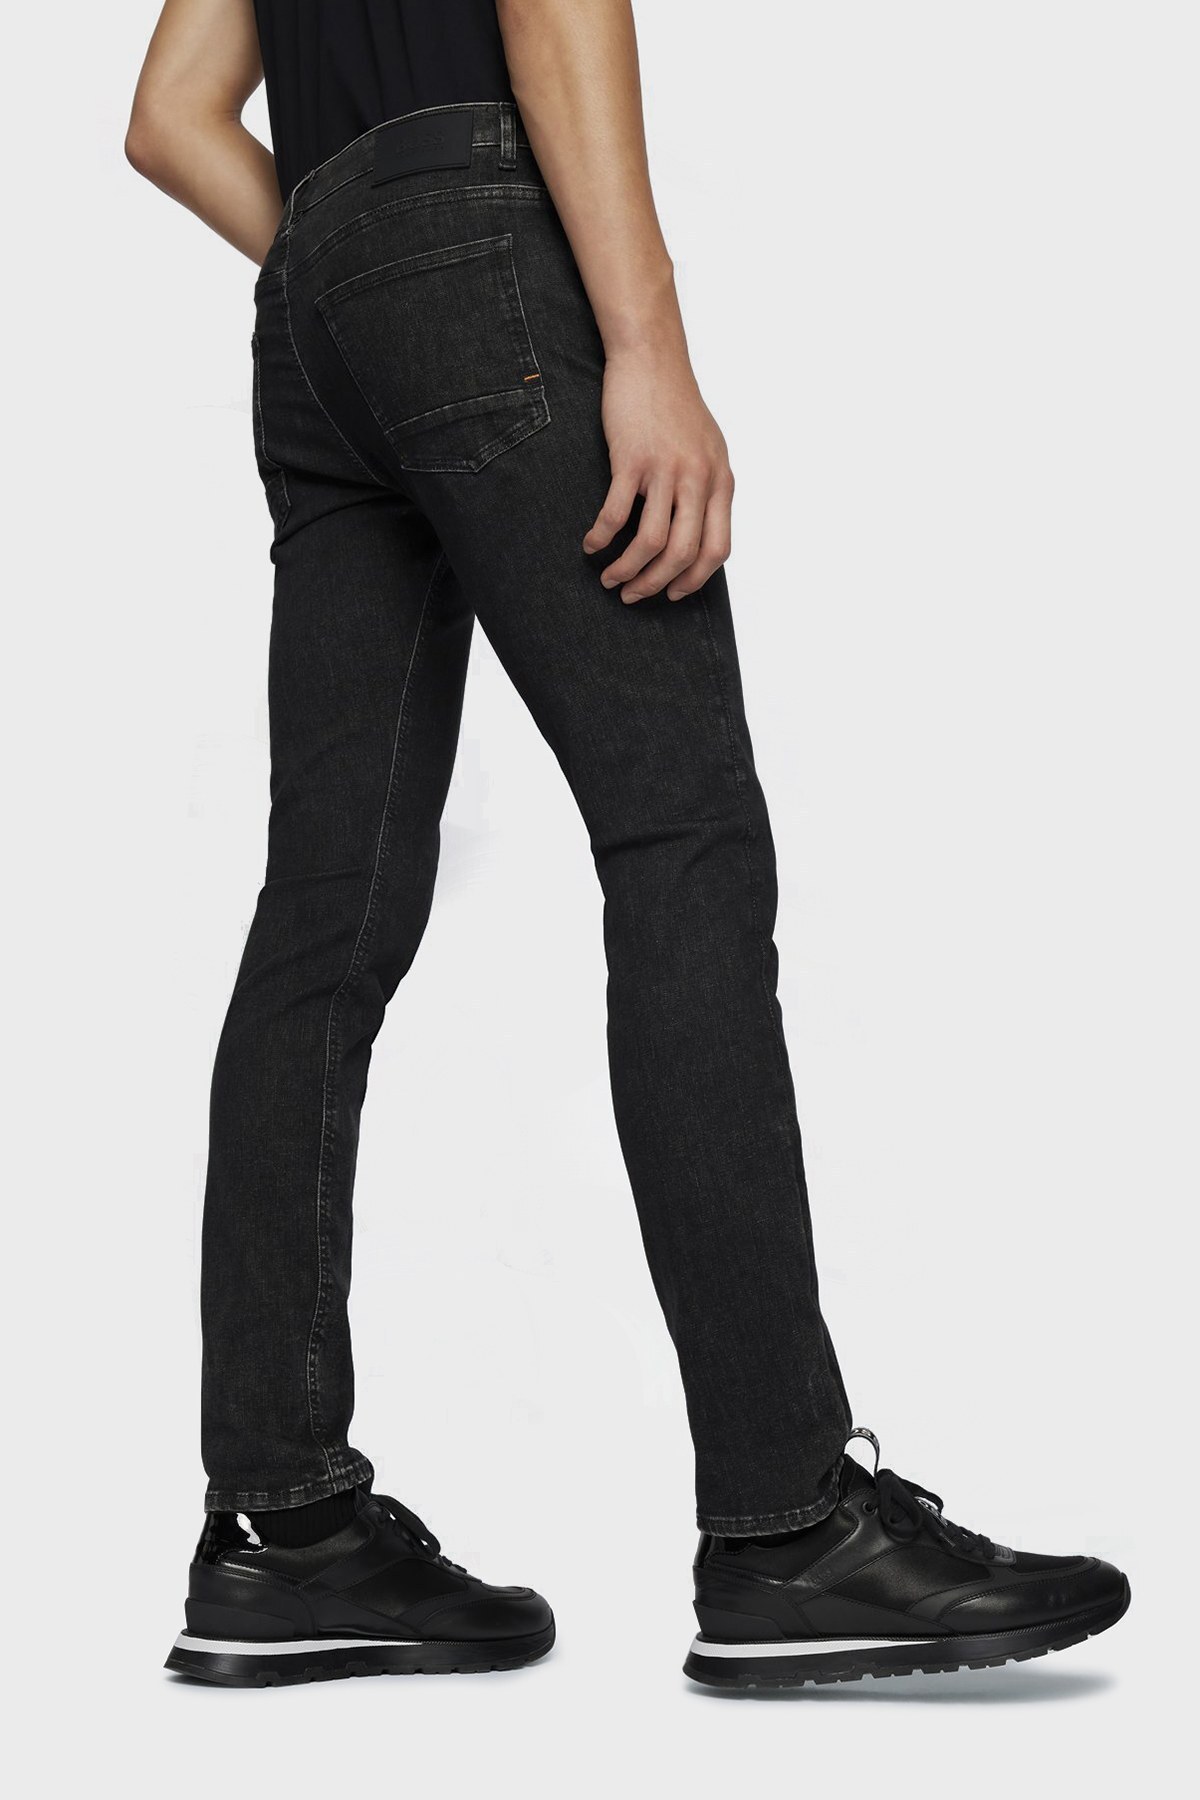 Boss Pamuklu Normal Bel Slim Fit Jeans Erkek Kot Pantolon 50471532 004 SİYAH